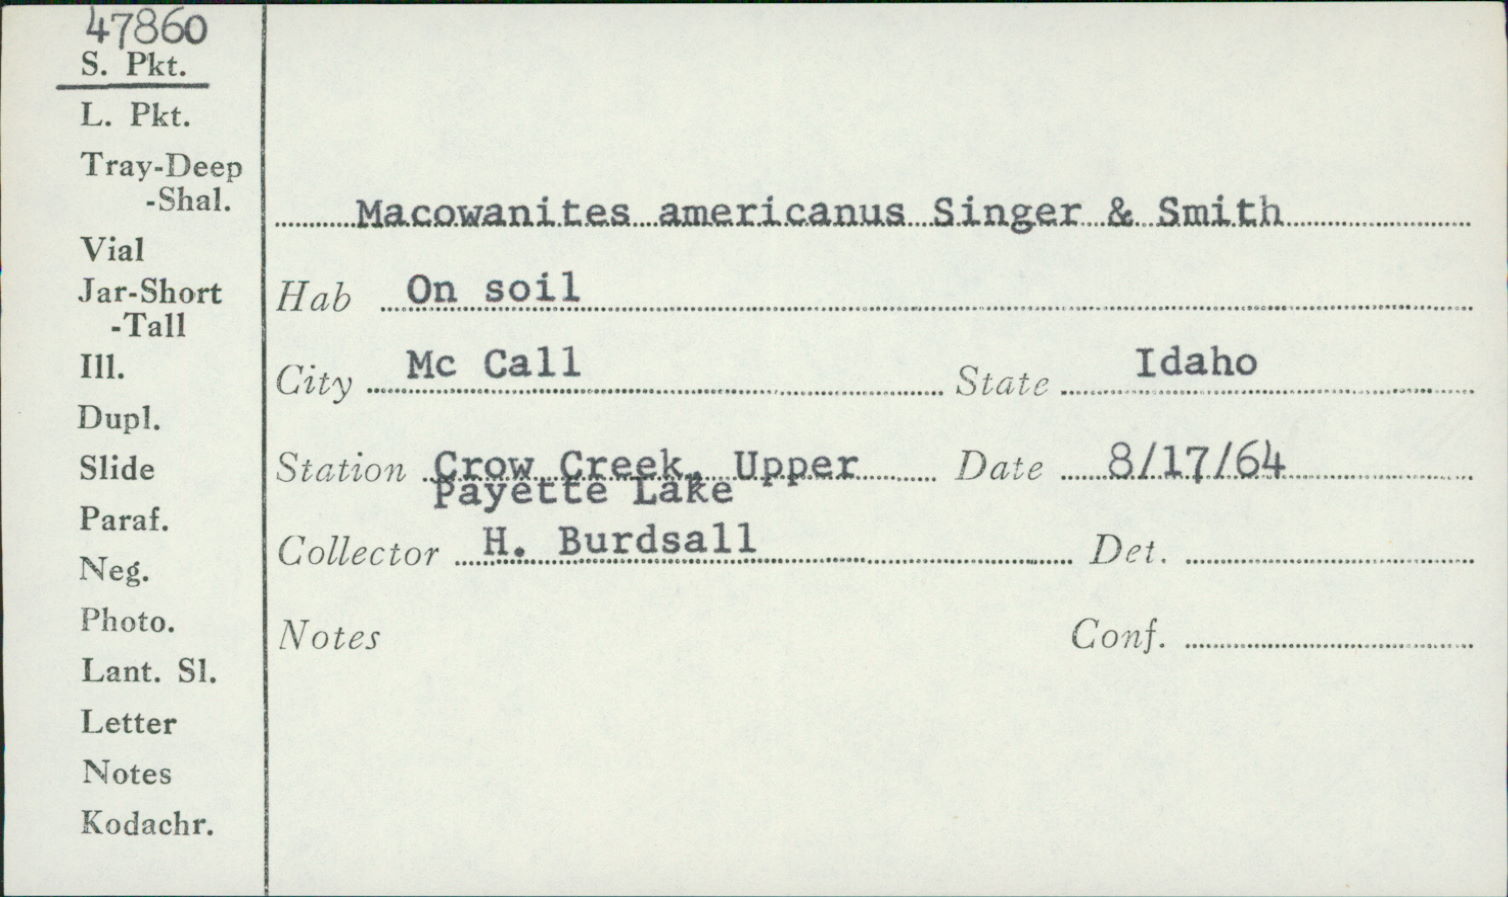 Macowanites americanus image